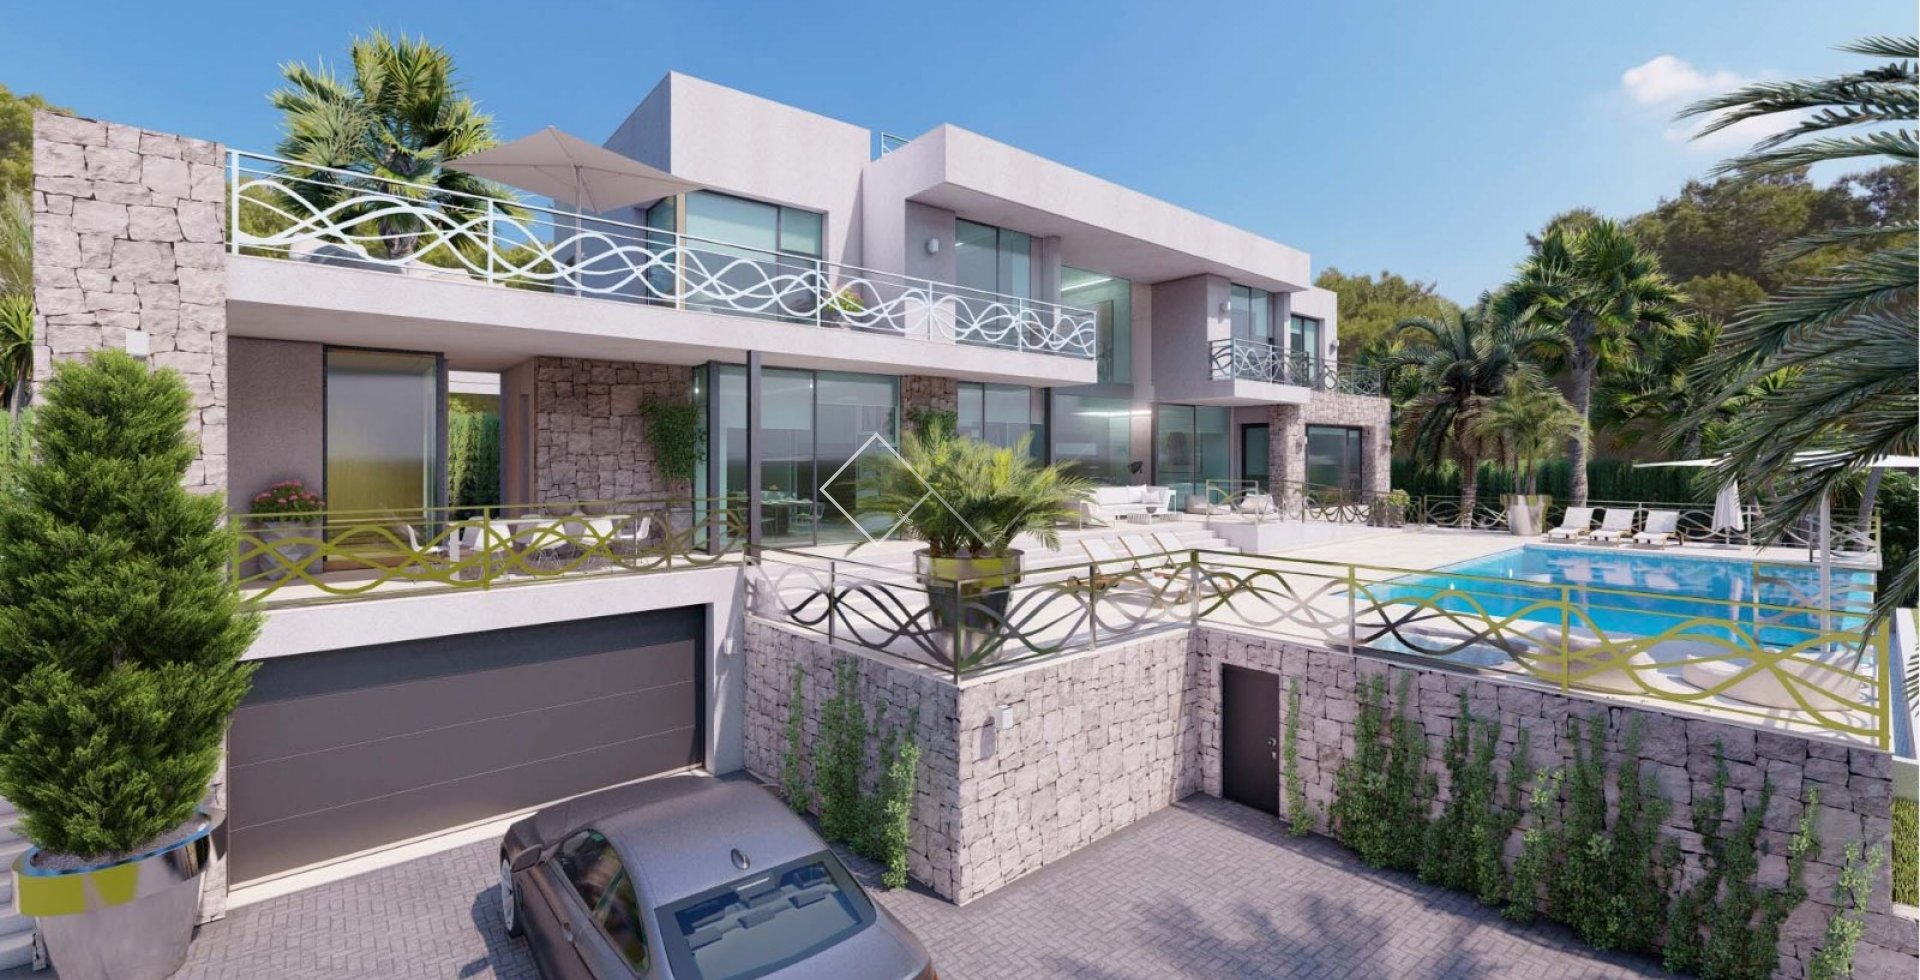 aanzicht woning - Indrukwekkende nieuwbouw villa, eerstelijns, met spectaculair zeezicht, Calpe